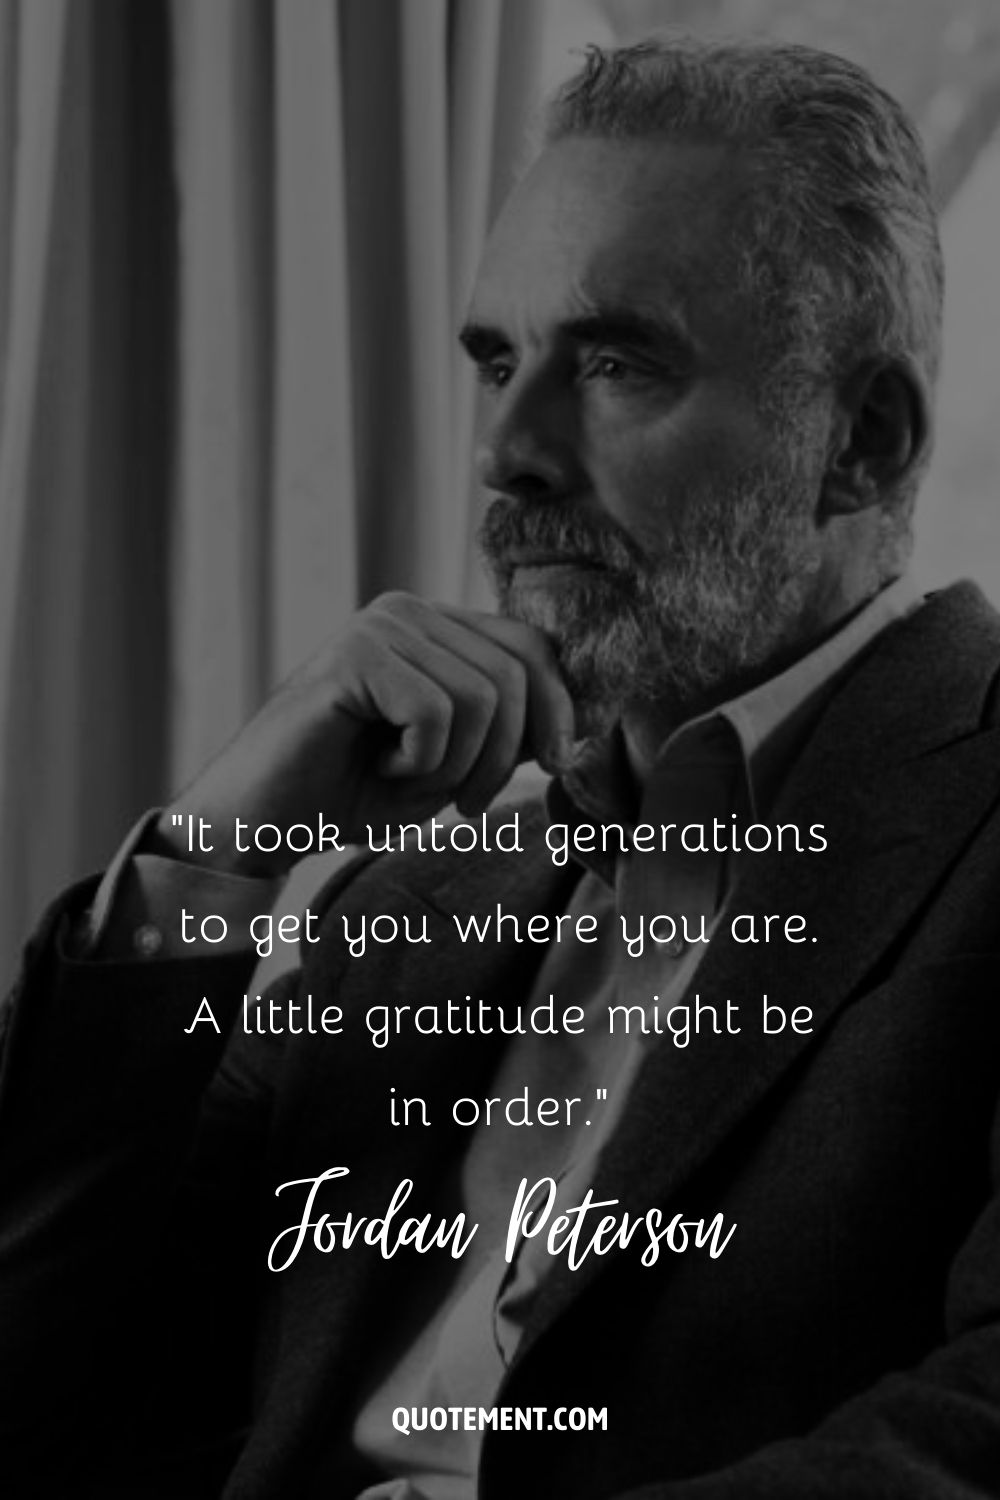 Cita de Jordan Peterson sobre la gratitud.